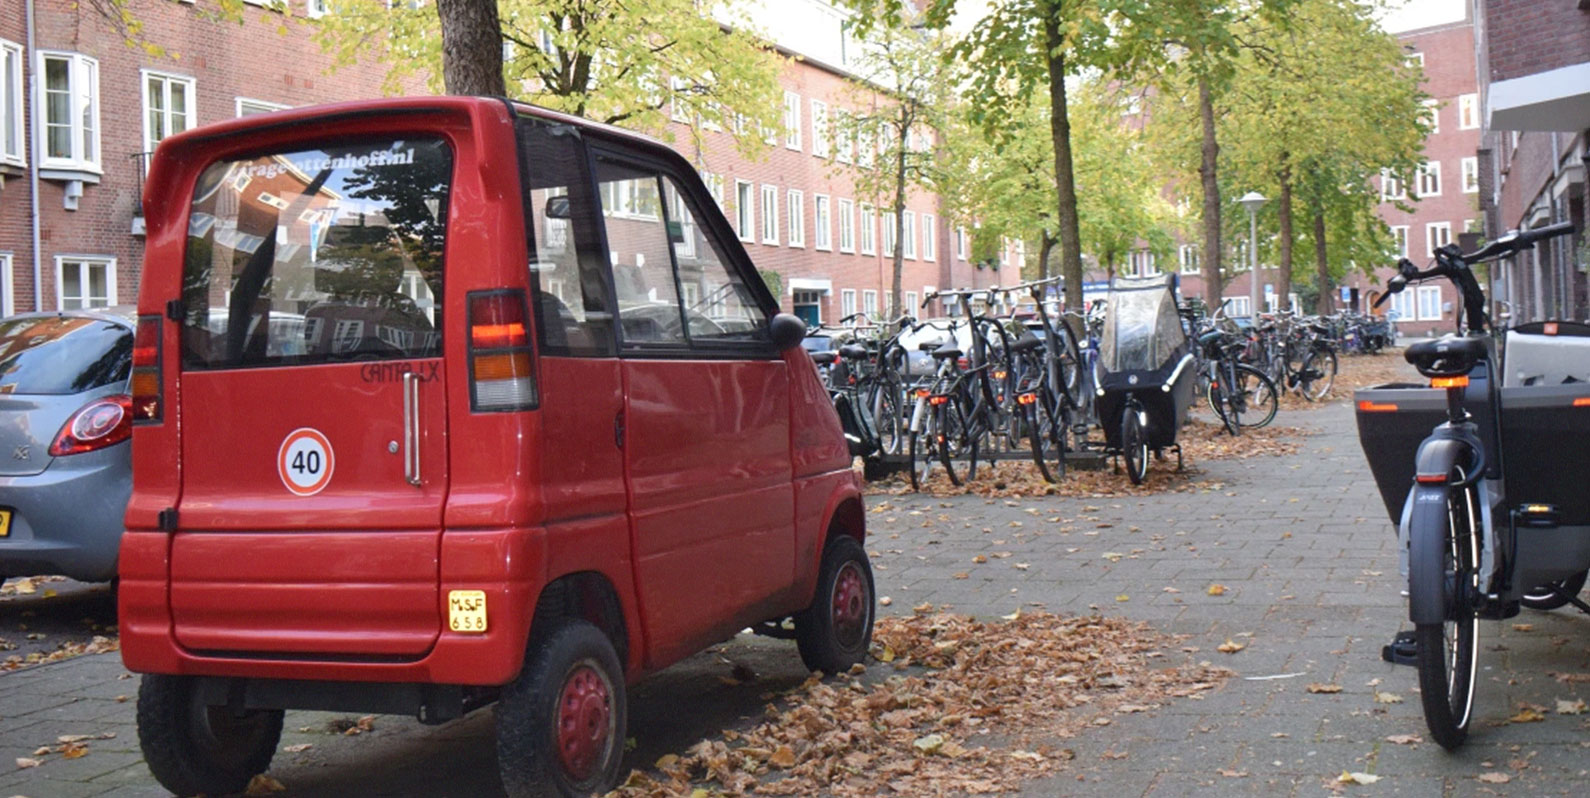 Este minúsculo veículo holandês para pessoas com deficiência está ganhando terreno